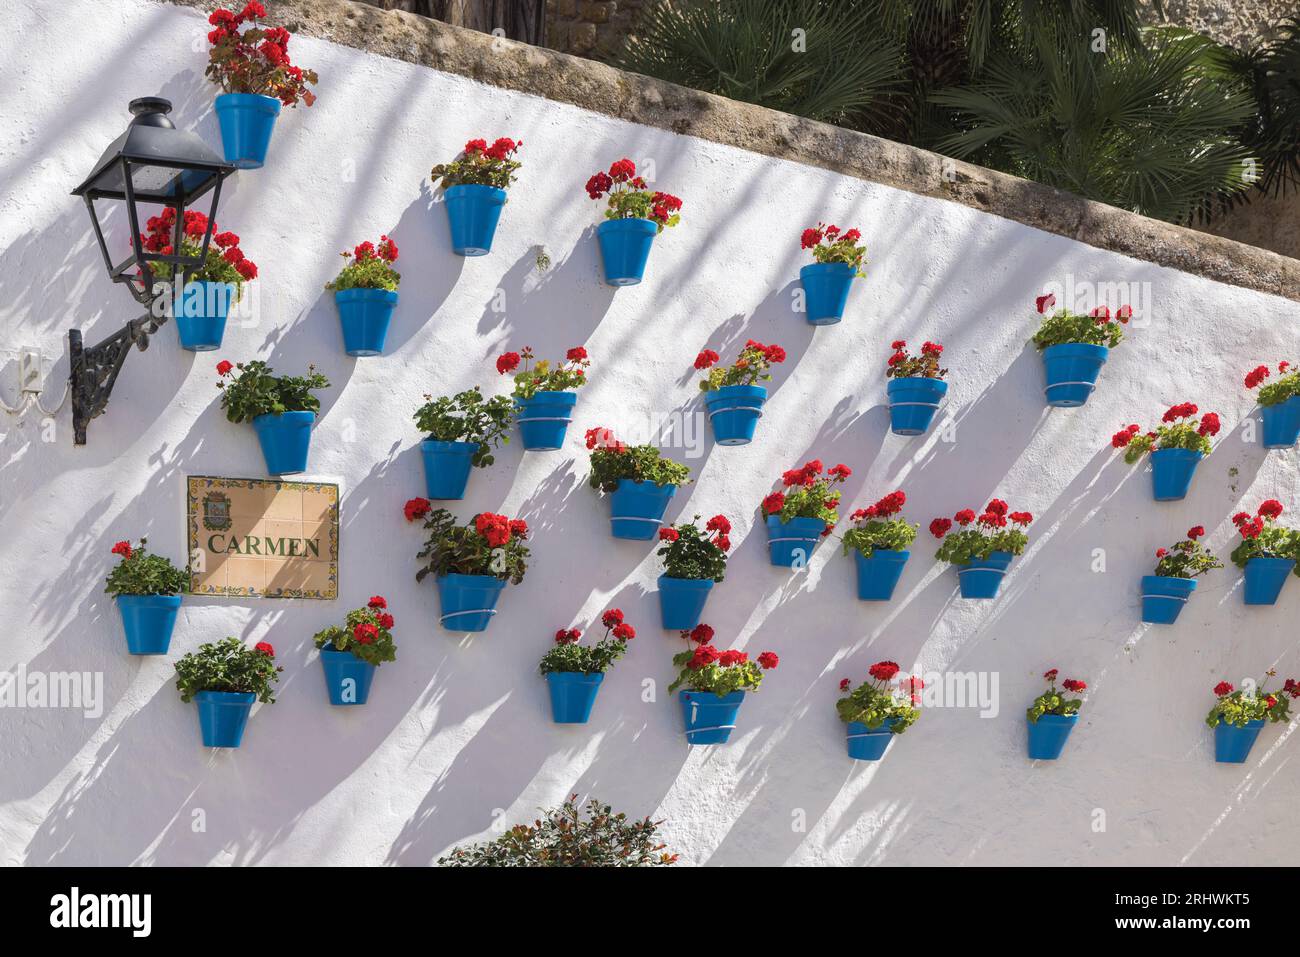 Marbella, Costa del Sol, Provinz Malaga, Andalusien, Südspanien. Geranienreihe in blauen Blumentöpfen in der Calle Carmen. Stockfoto